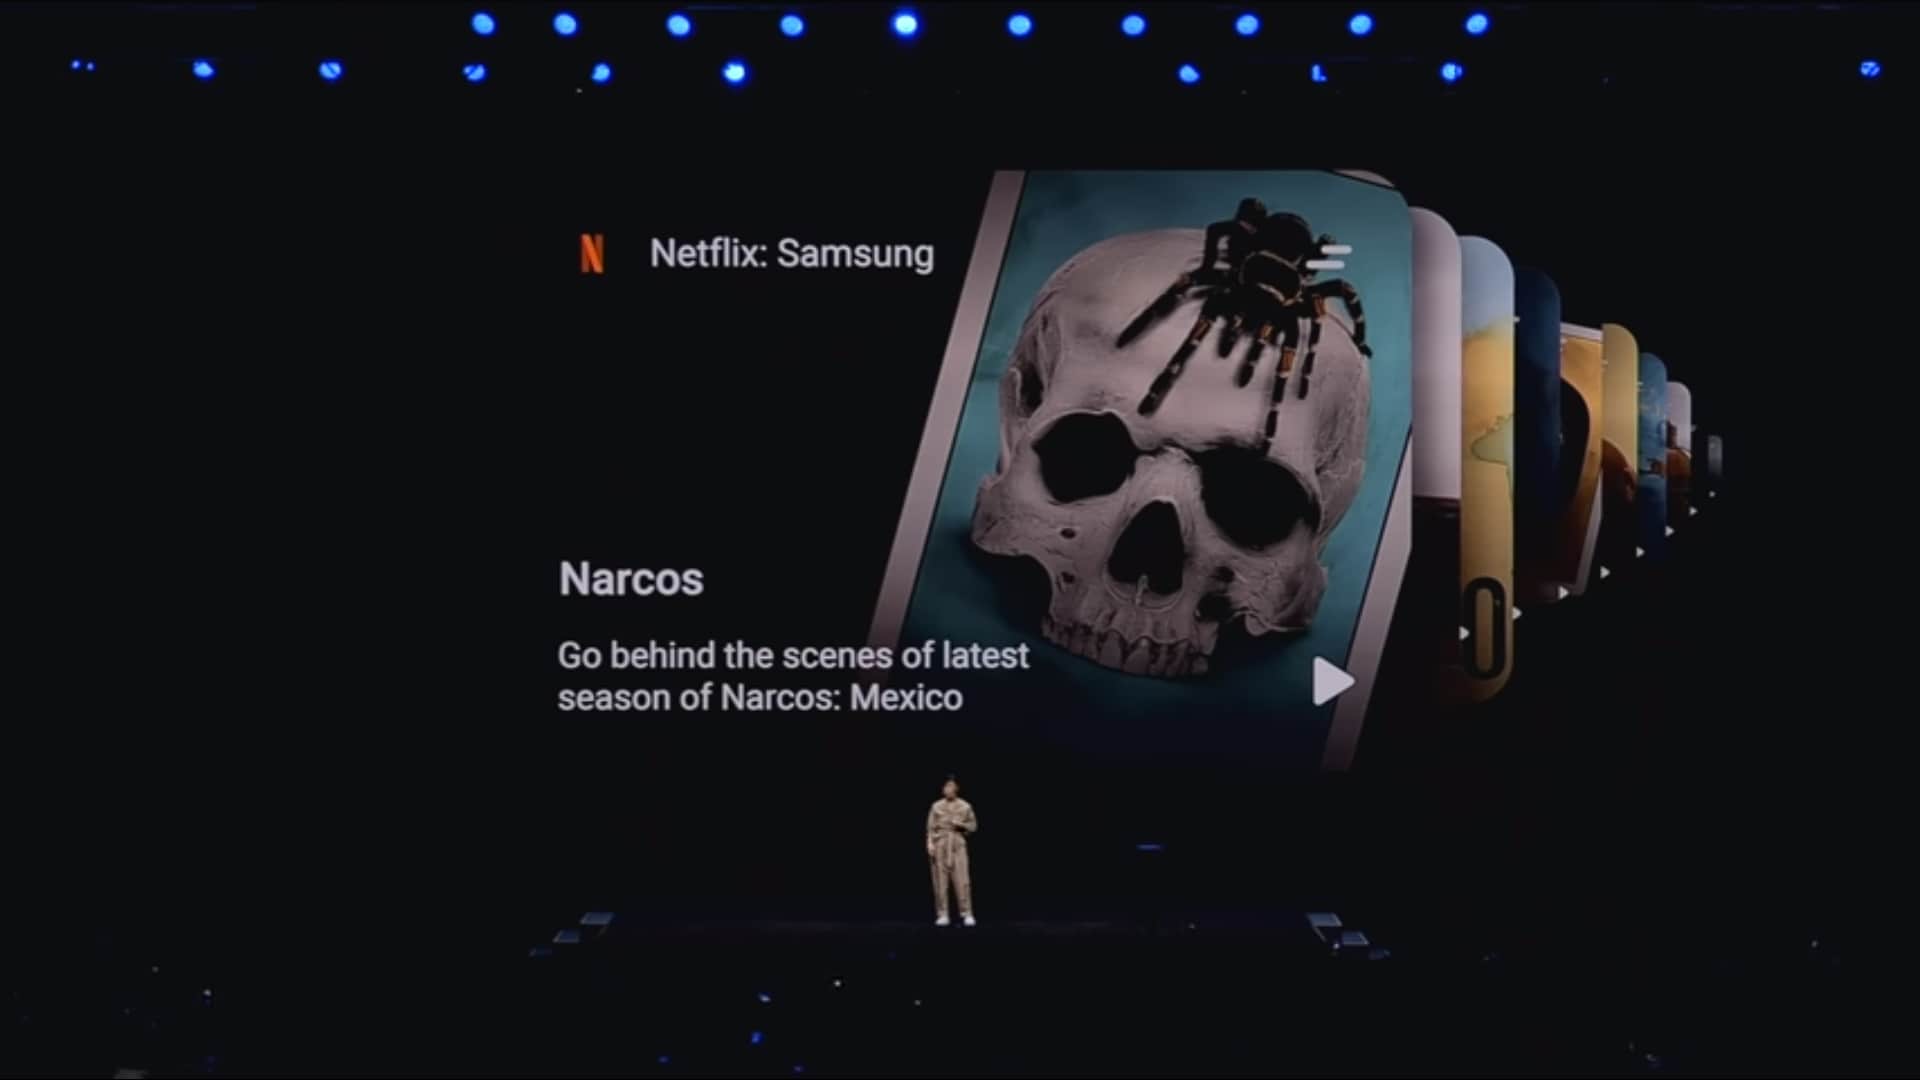 Samsung e Netflix insieme: nuovi contenuti esclusivi per celebrare la serie Galaxy